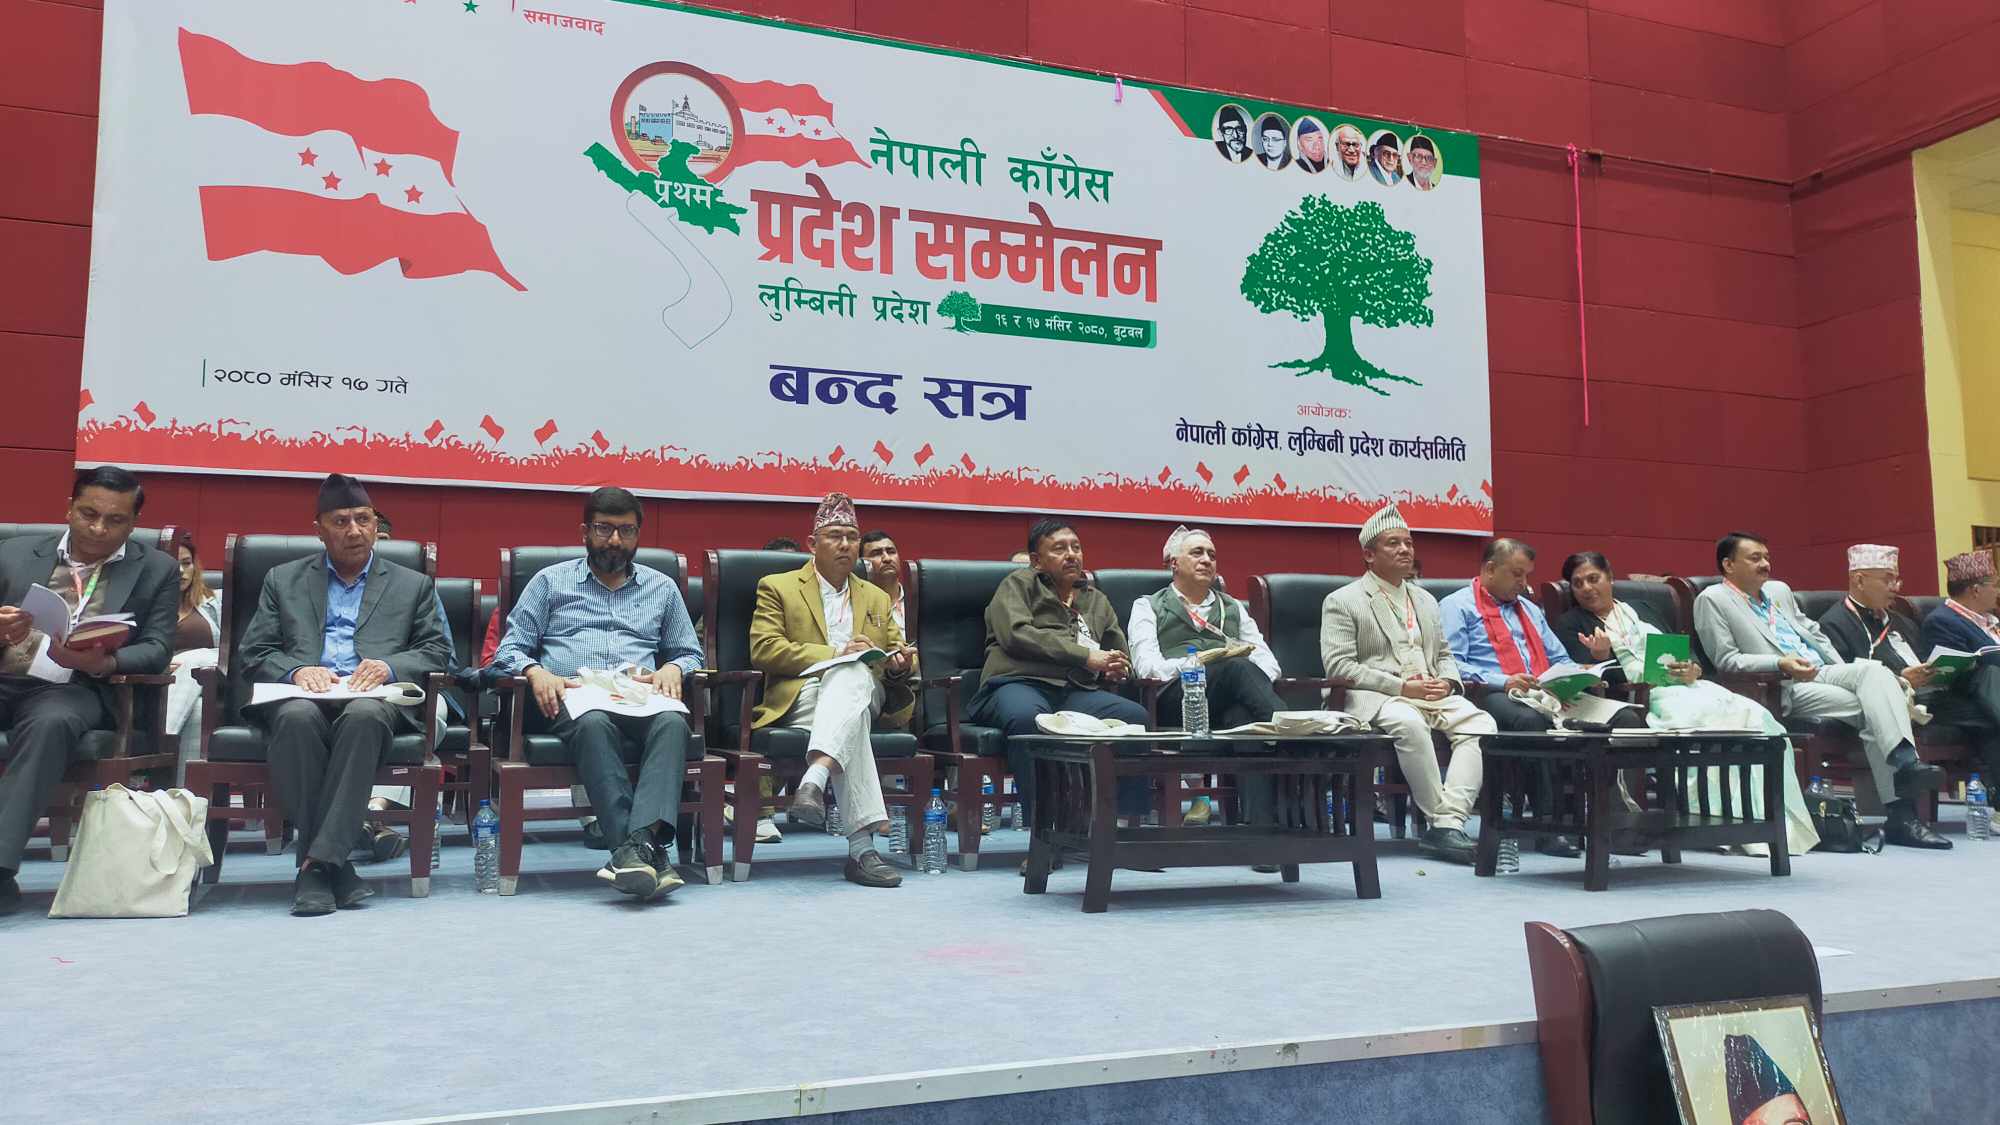 कांग्रेस लुम्बिनीको प्रदेश सम्मेलन : संघिय व्यवस्था अनुसार तहगत संरचनालाई पूर्ण रुपमा जिम्मेवारी प्रदान गर्न माग